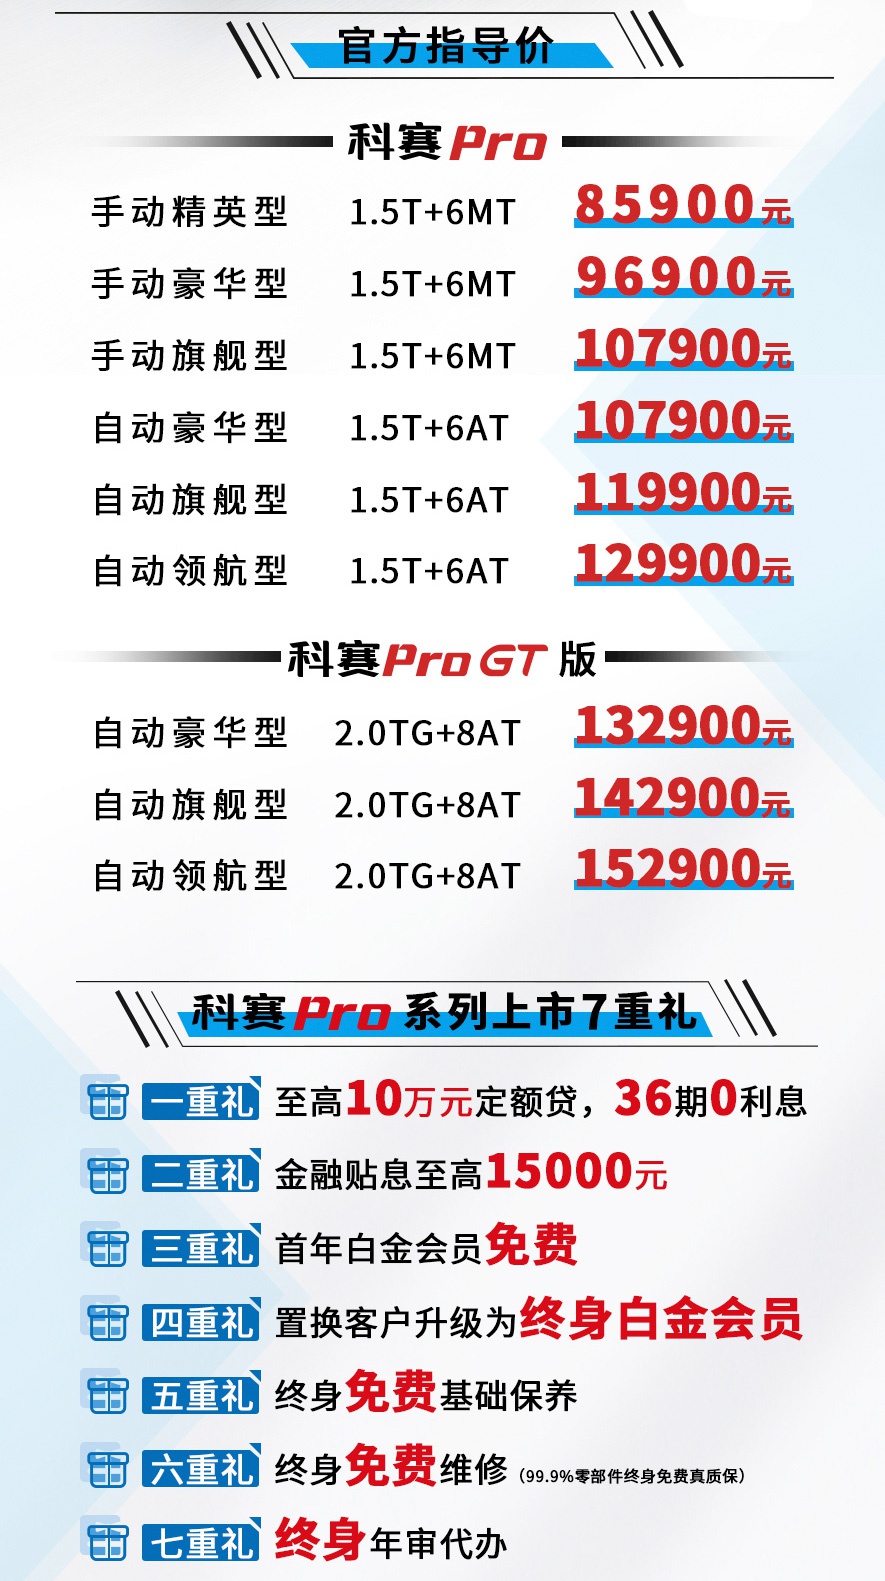 真7座SUV 长安欧尚科赛Pro上市 售8.59-15.29万元